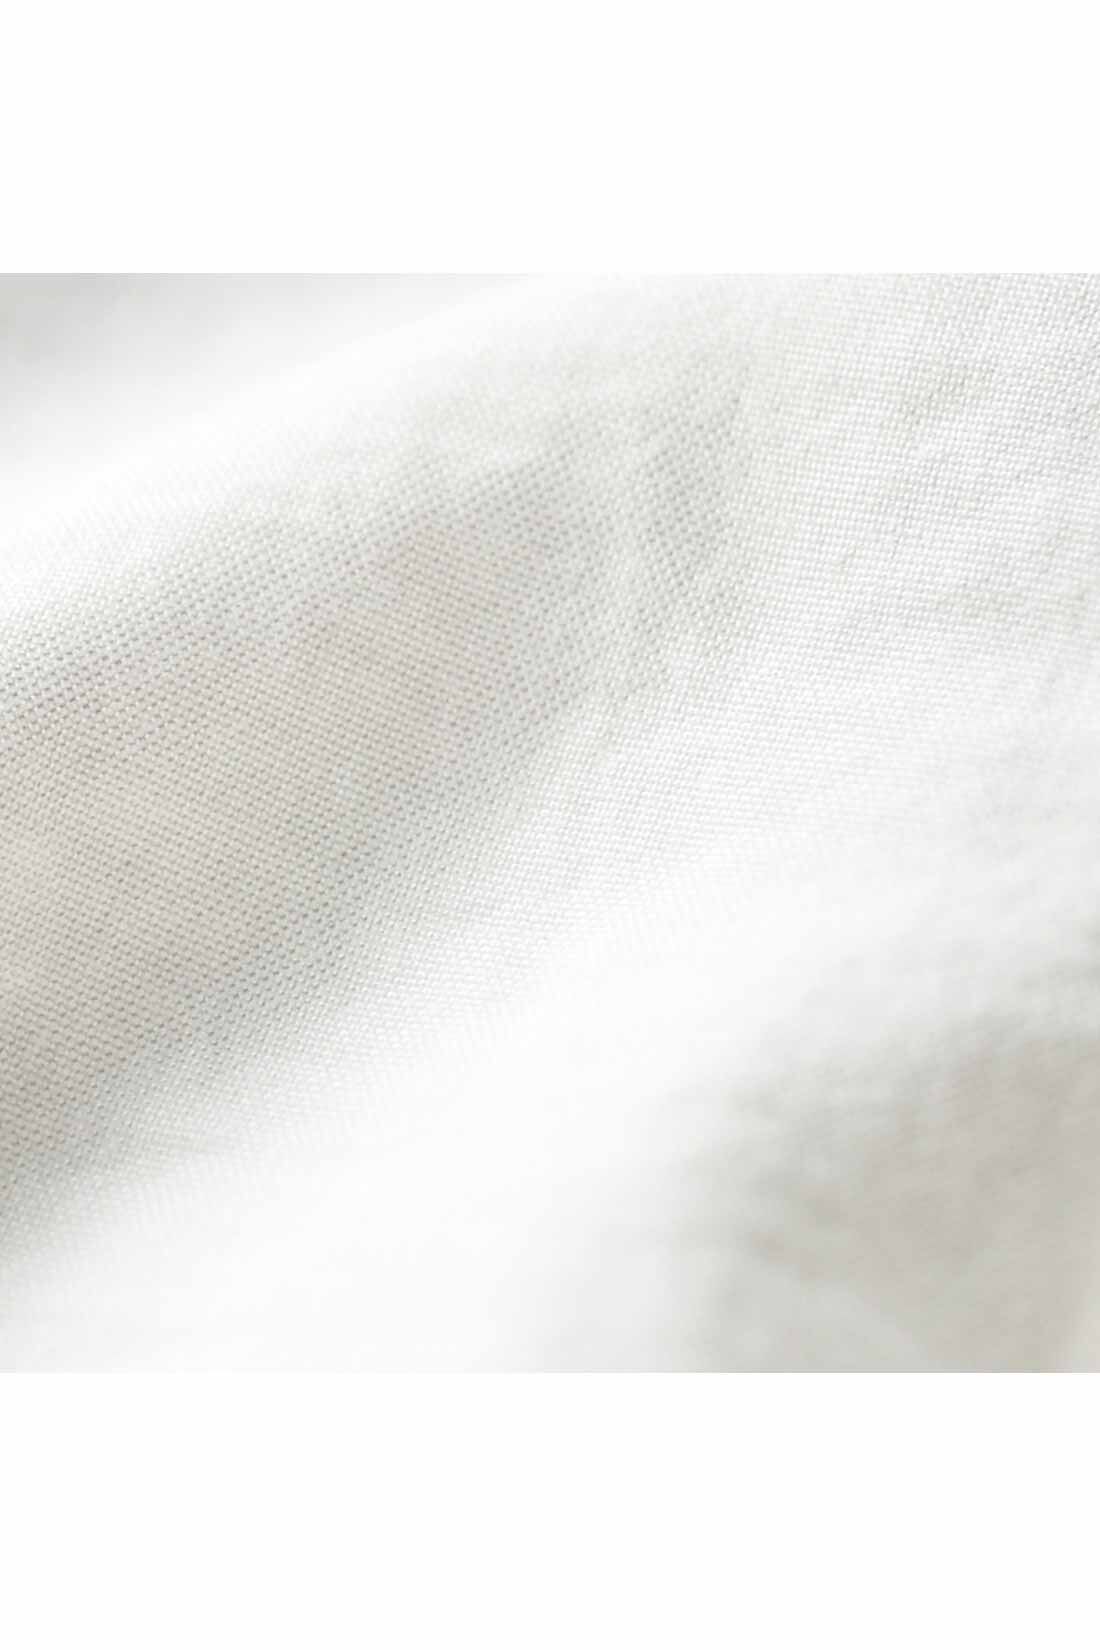 IEDIT[イディット]　繊細な表情がエレガントなリバーレース遣いブラウス〈ブラック〉|ヴィンテージのような風合いのある表面感の布はく素材。